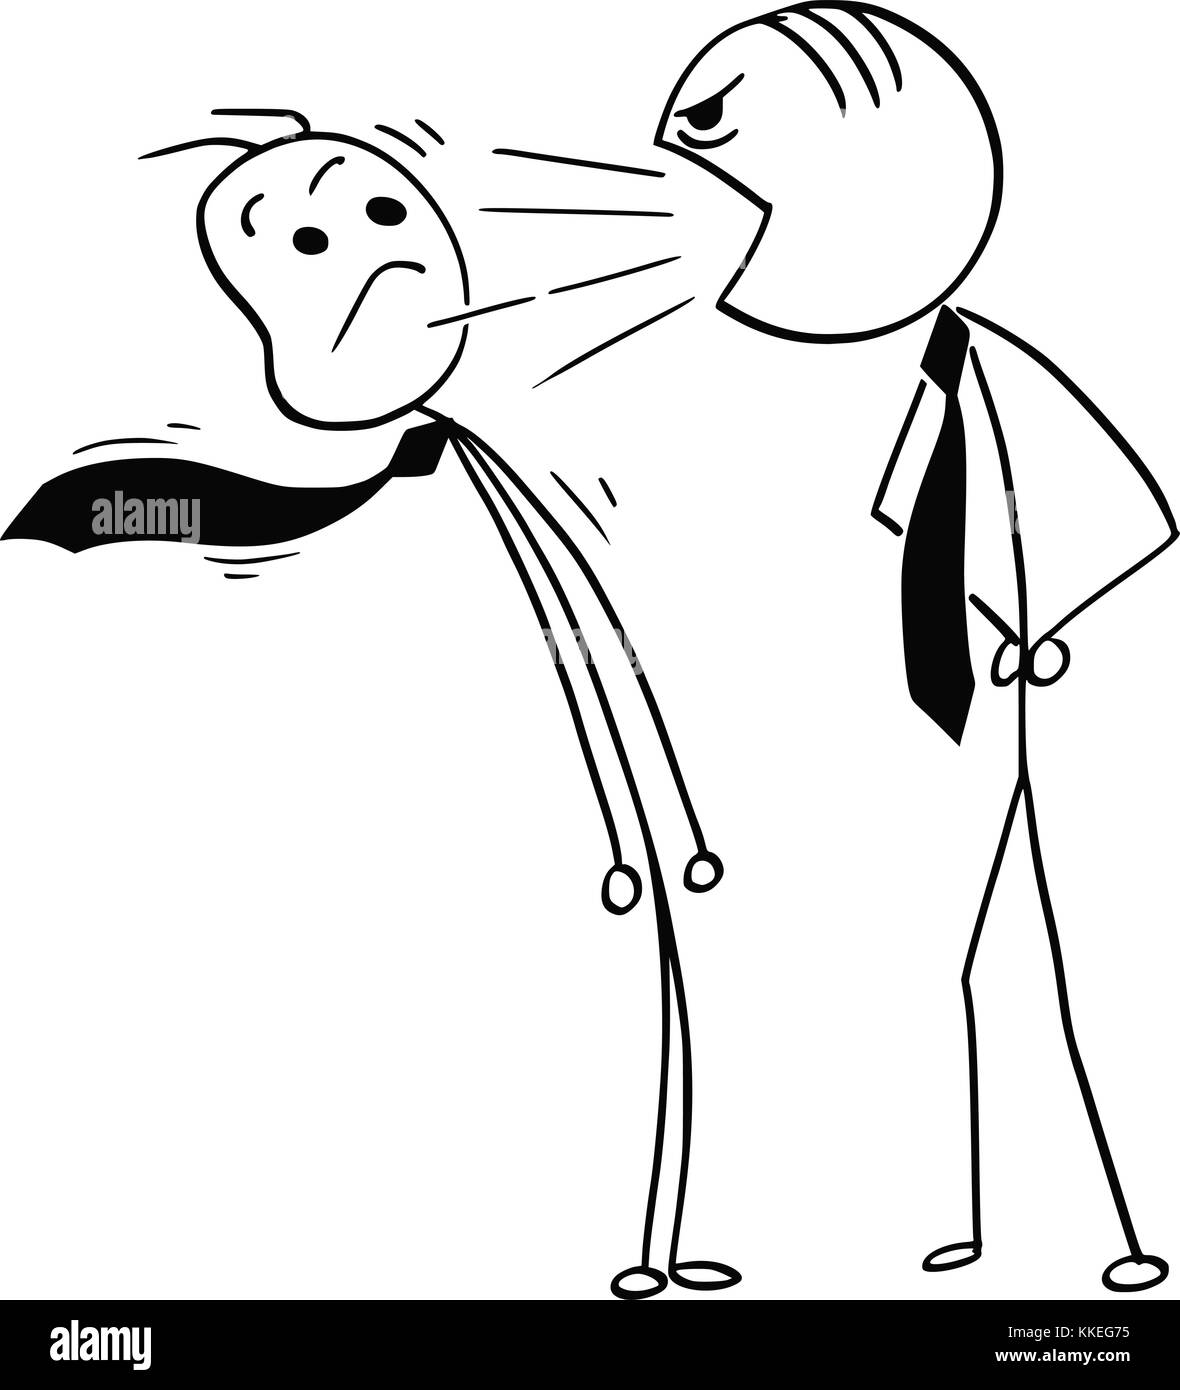 Cartoon stick Mann Zeichnung Abbildung: Boss kreischend an männlichen Büroangestellter schreien. Stock Vektor